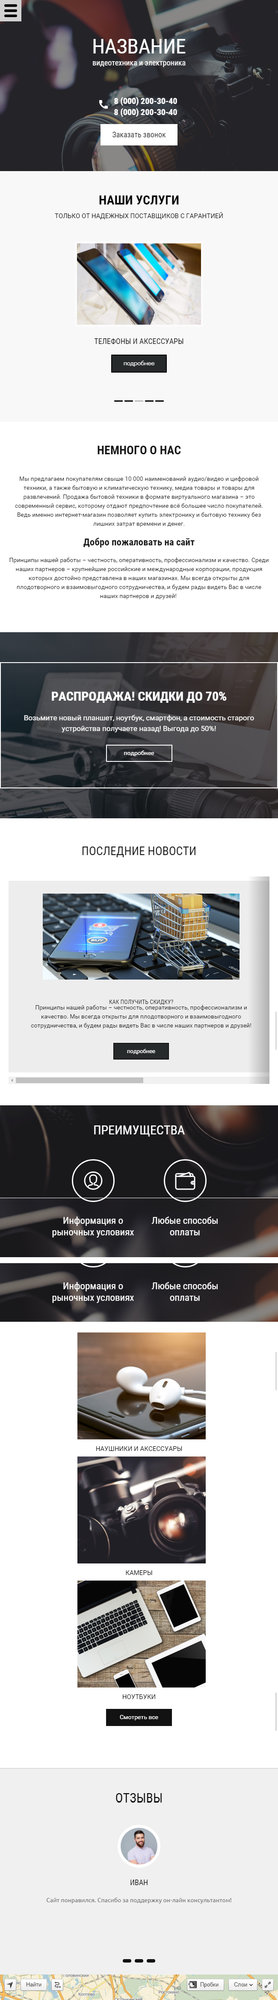 Готовый Сайт-Бизнес № 1820033 - Электроника, компьютерная, бытовая техника, оргтехника (Мобильная версия)